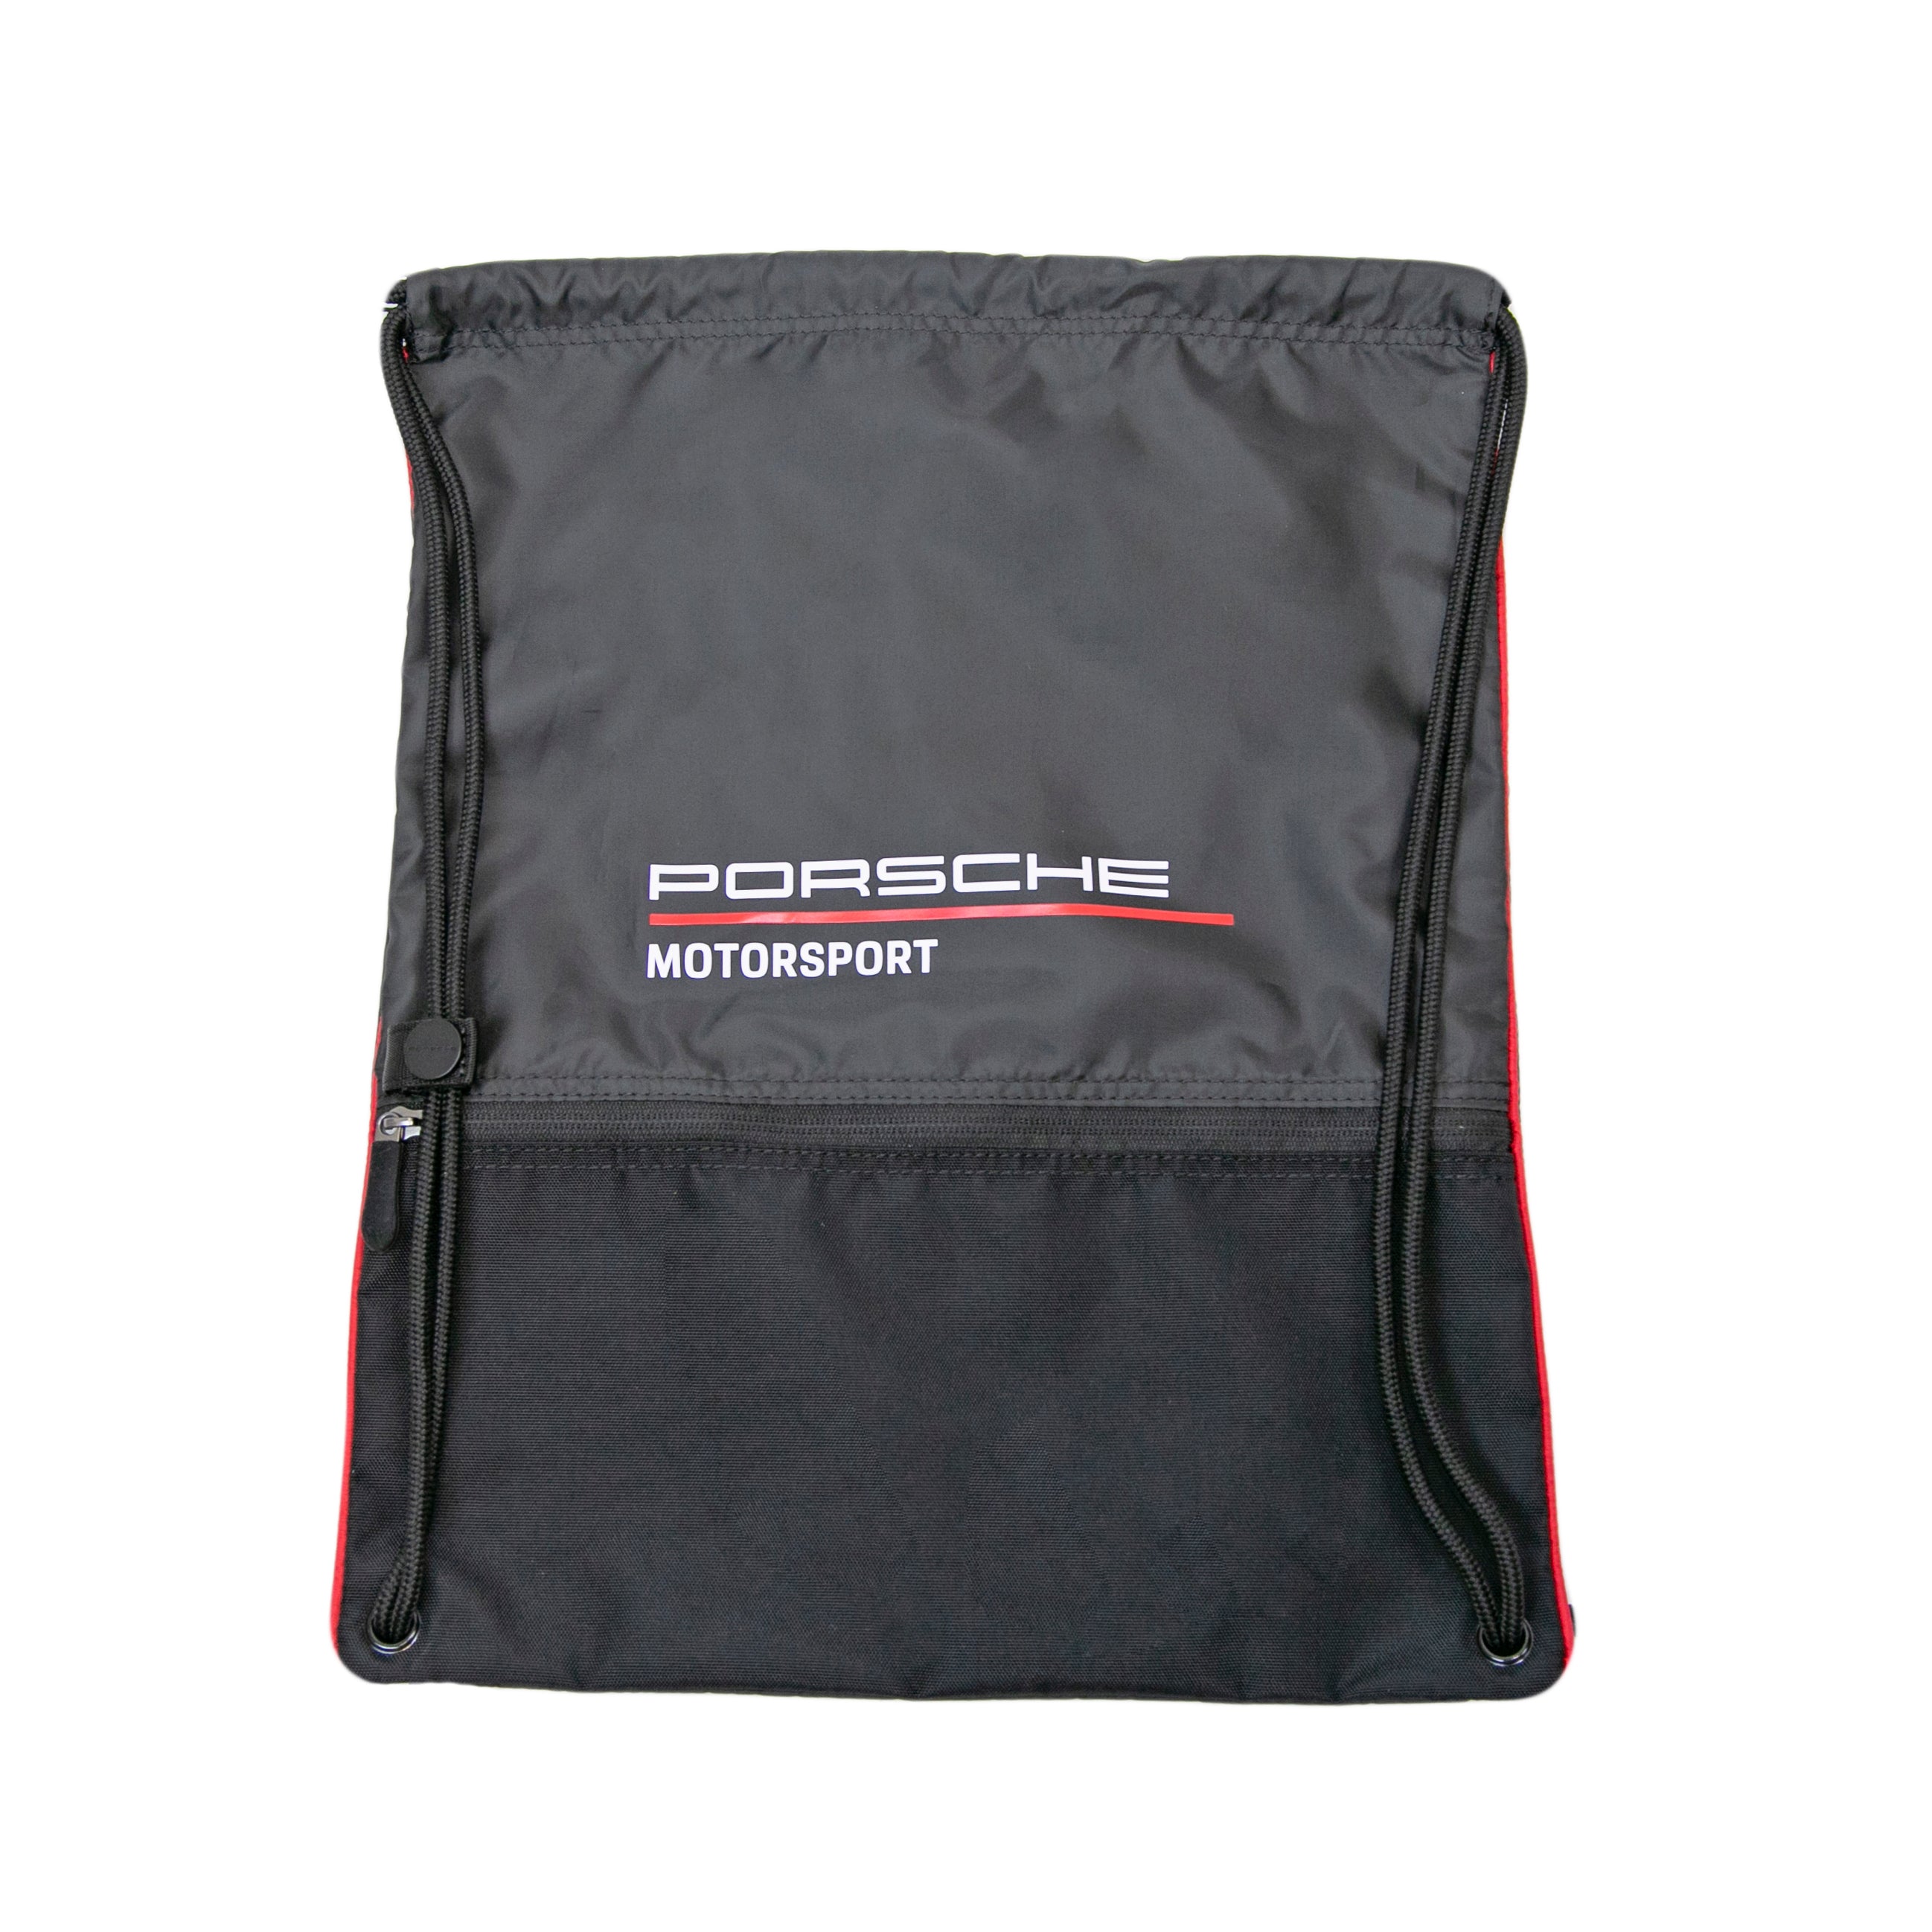 Porsche Motorsport Black Drawstring Bag